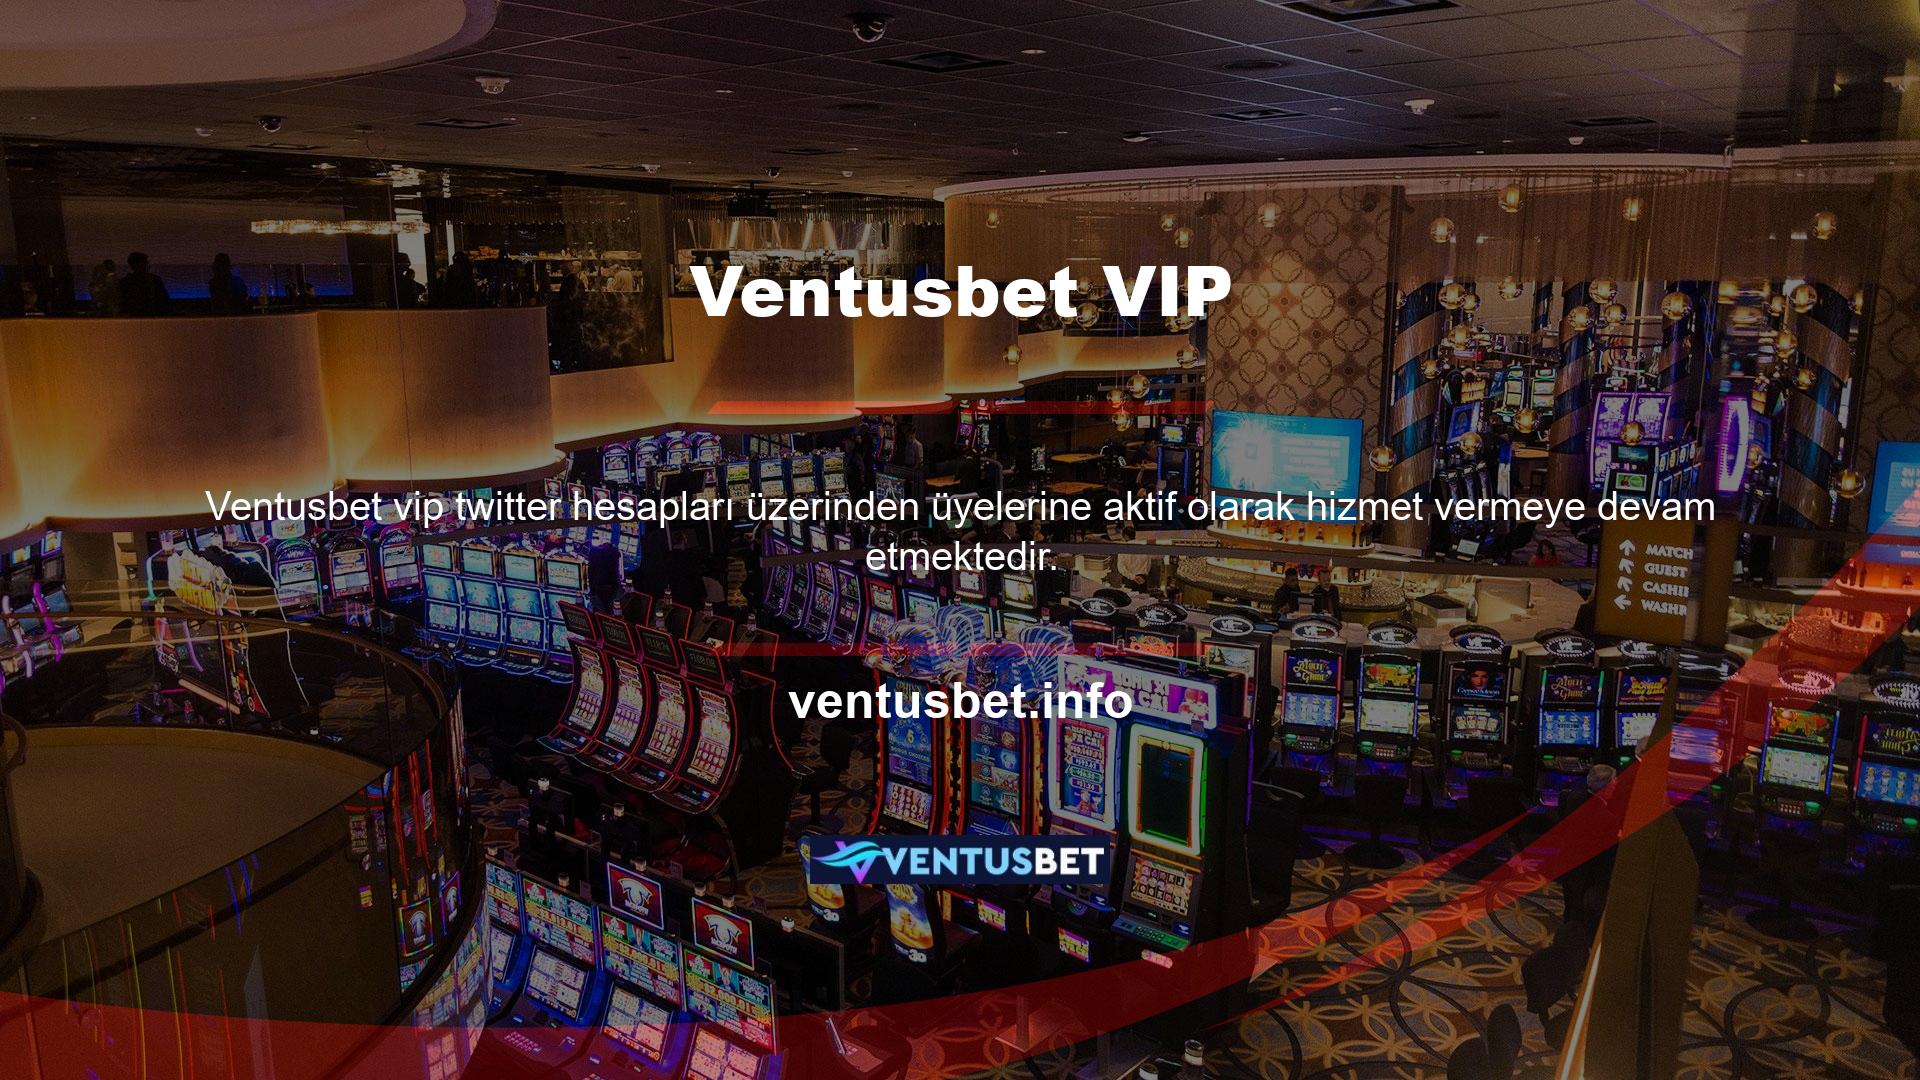 Ventusbet, çevrimiçi bahis platformları için iyi bilinen bir web sitesidir